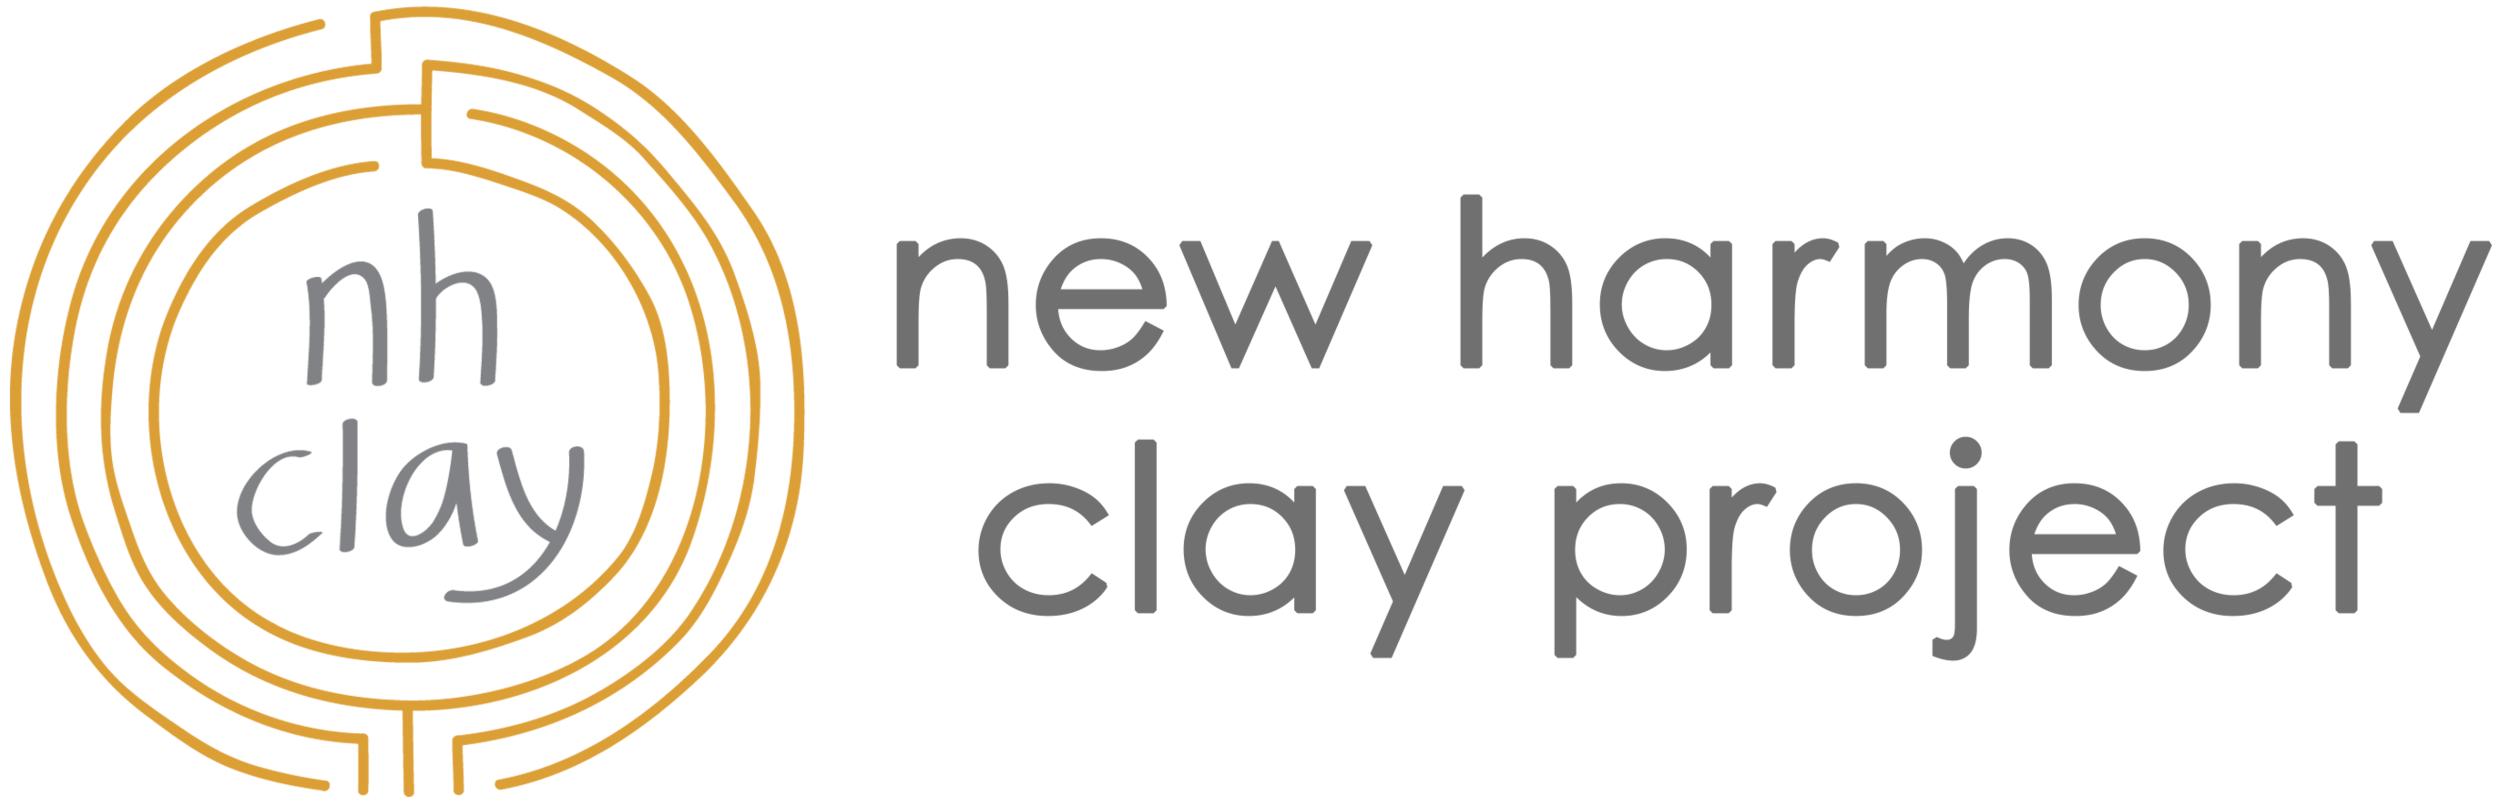 New Harmony Clay Project